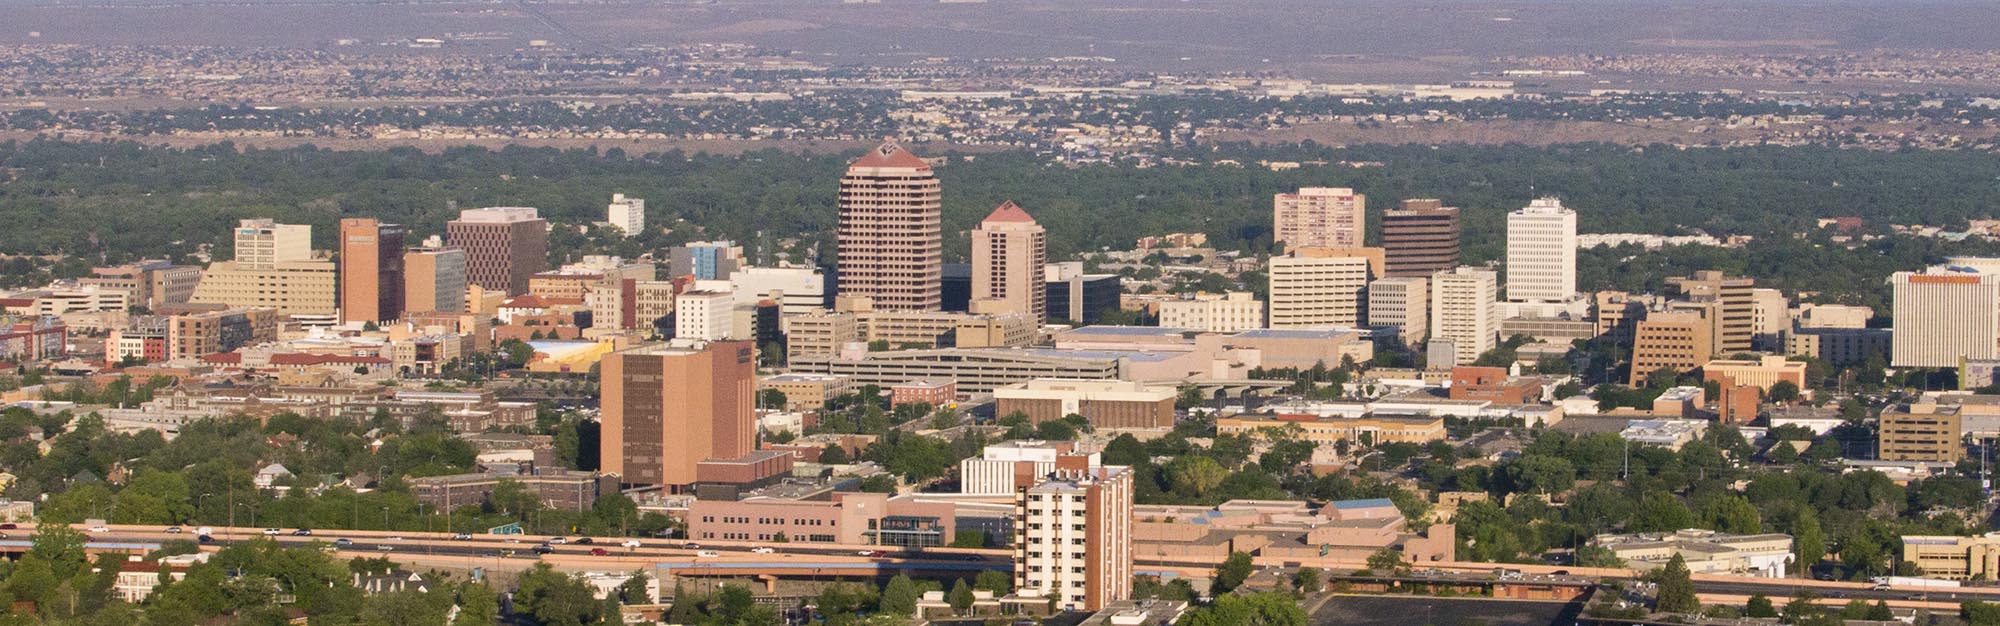 Luftaufnahme der Innenstadt von Albuquerque